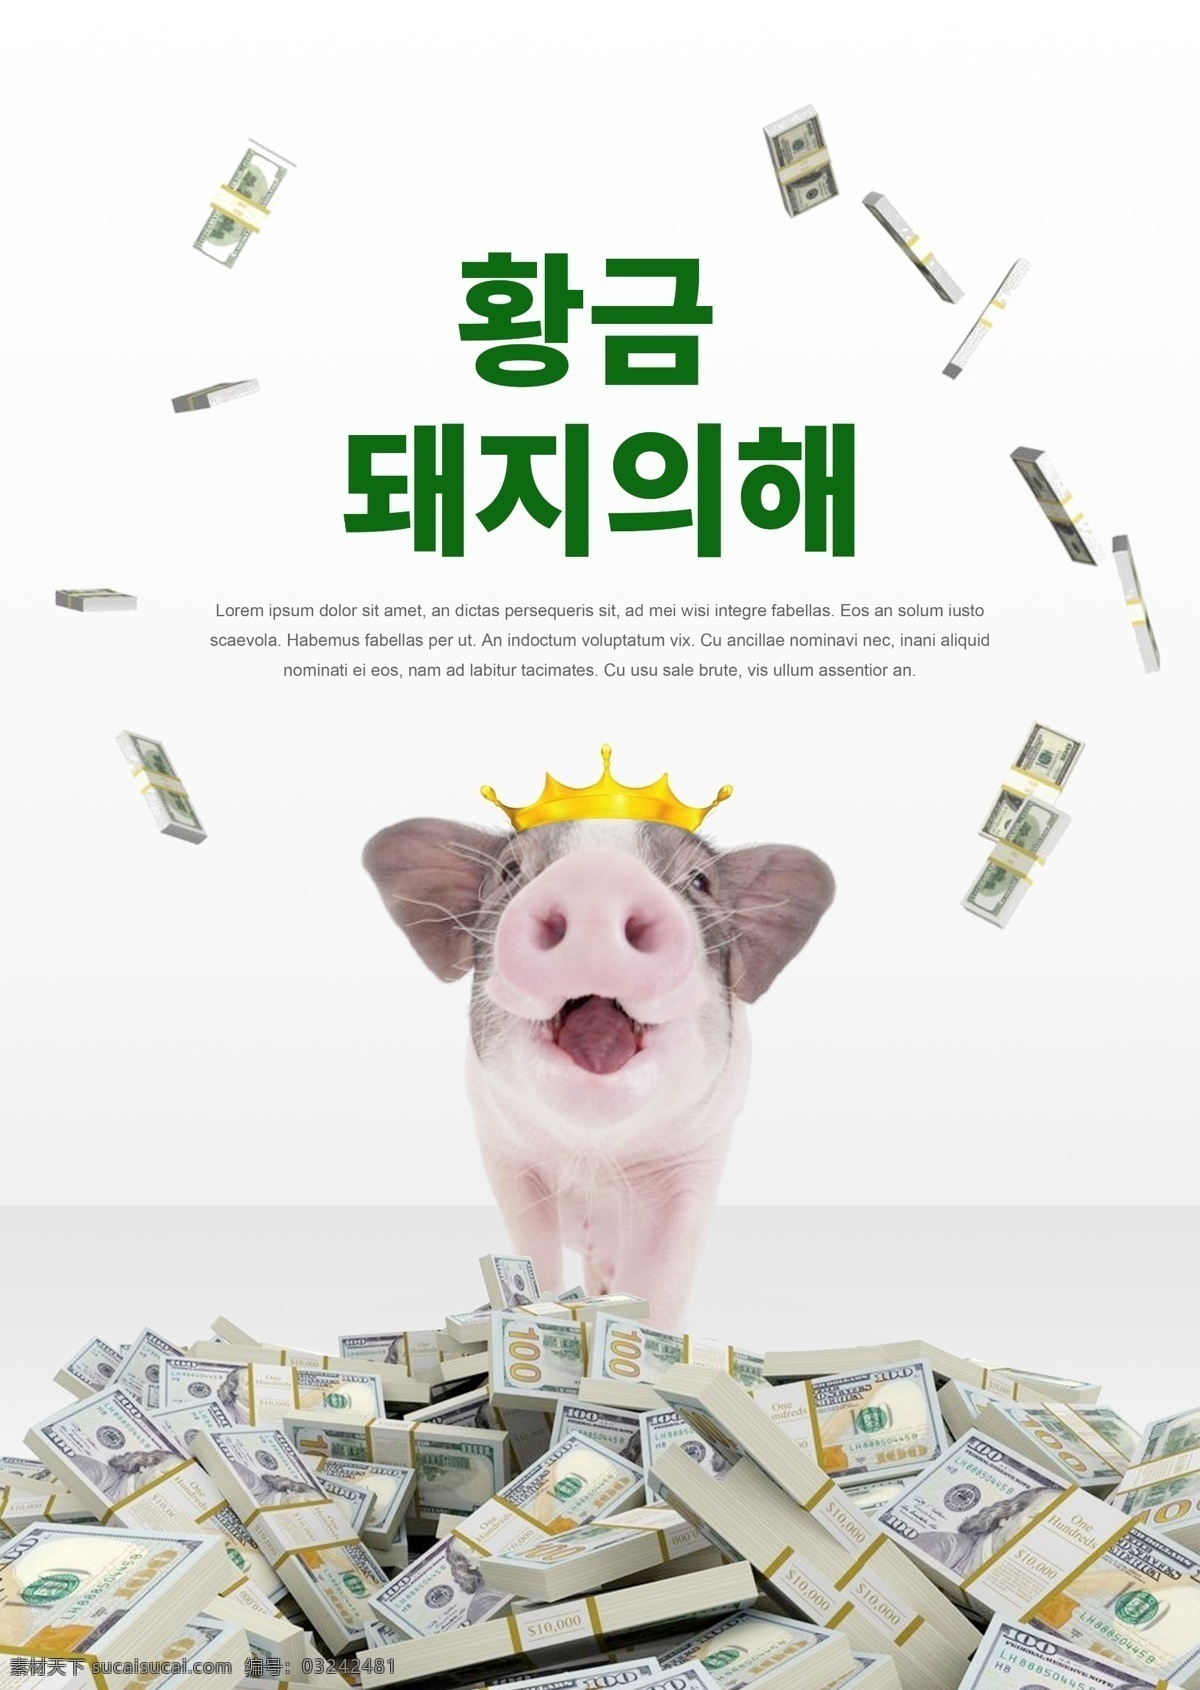 金 猪年 2019 年 海报 肝脏药物 绿色 美元 猪 祝你新年快乐 韩国 新的一年 金猪年 快乐的猪 美元雨